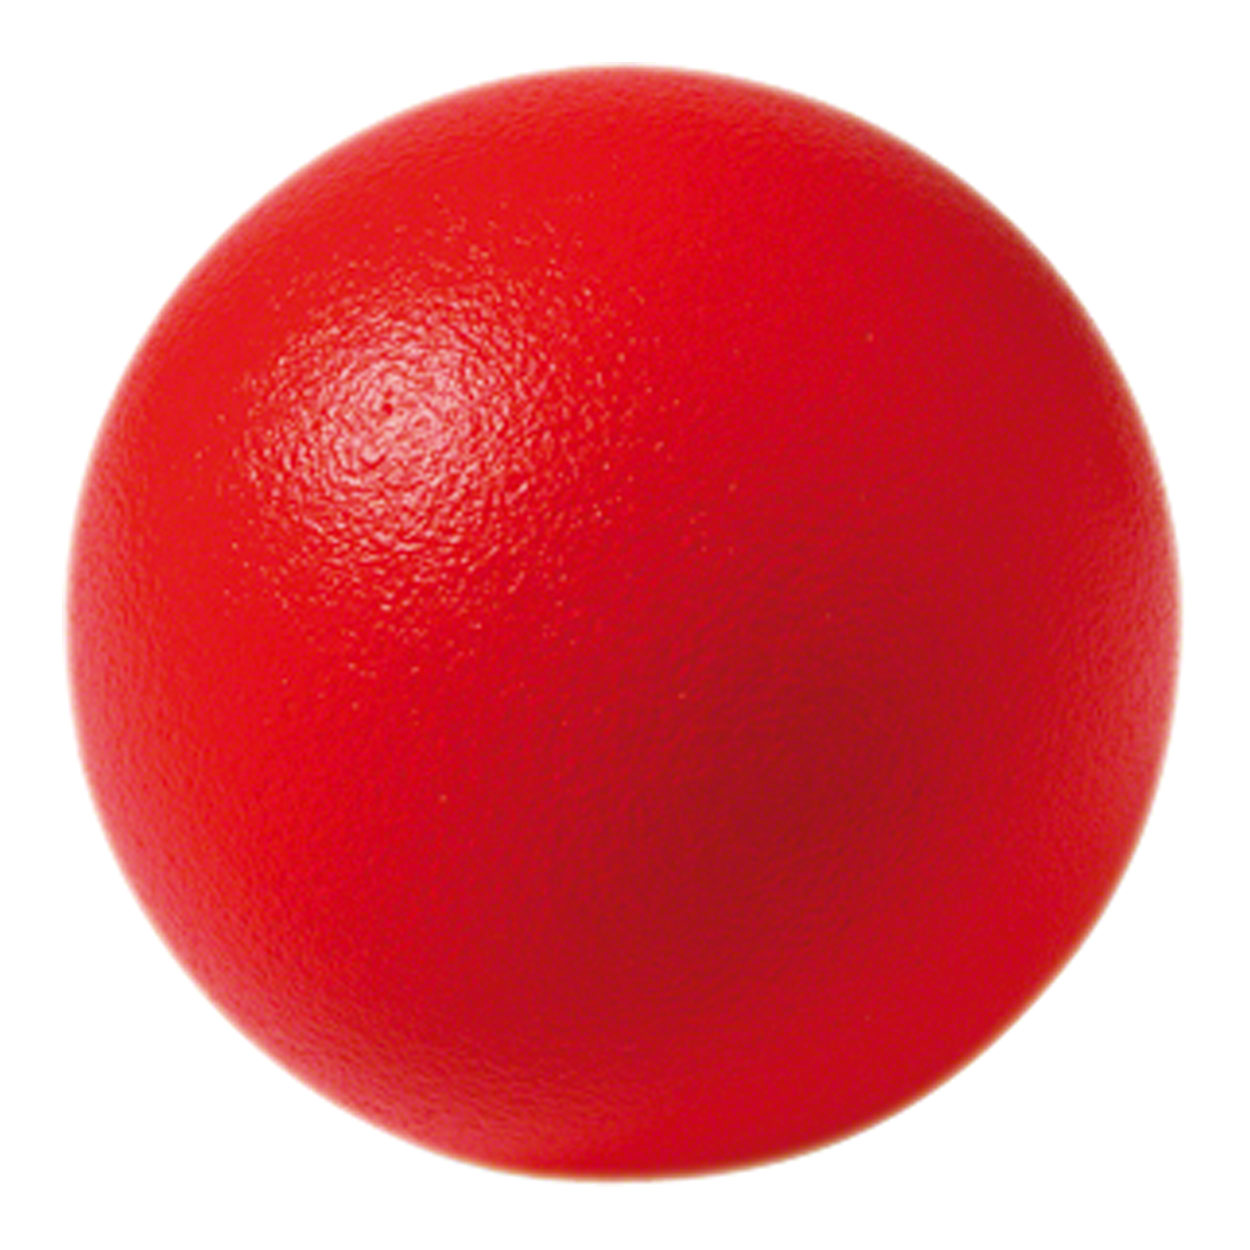 12 Stück Schaumstoffball Softball Softfussball Spielball Ball Spielzeug für